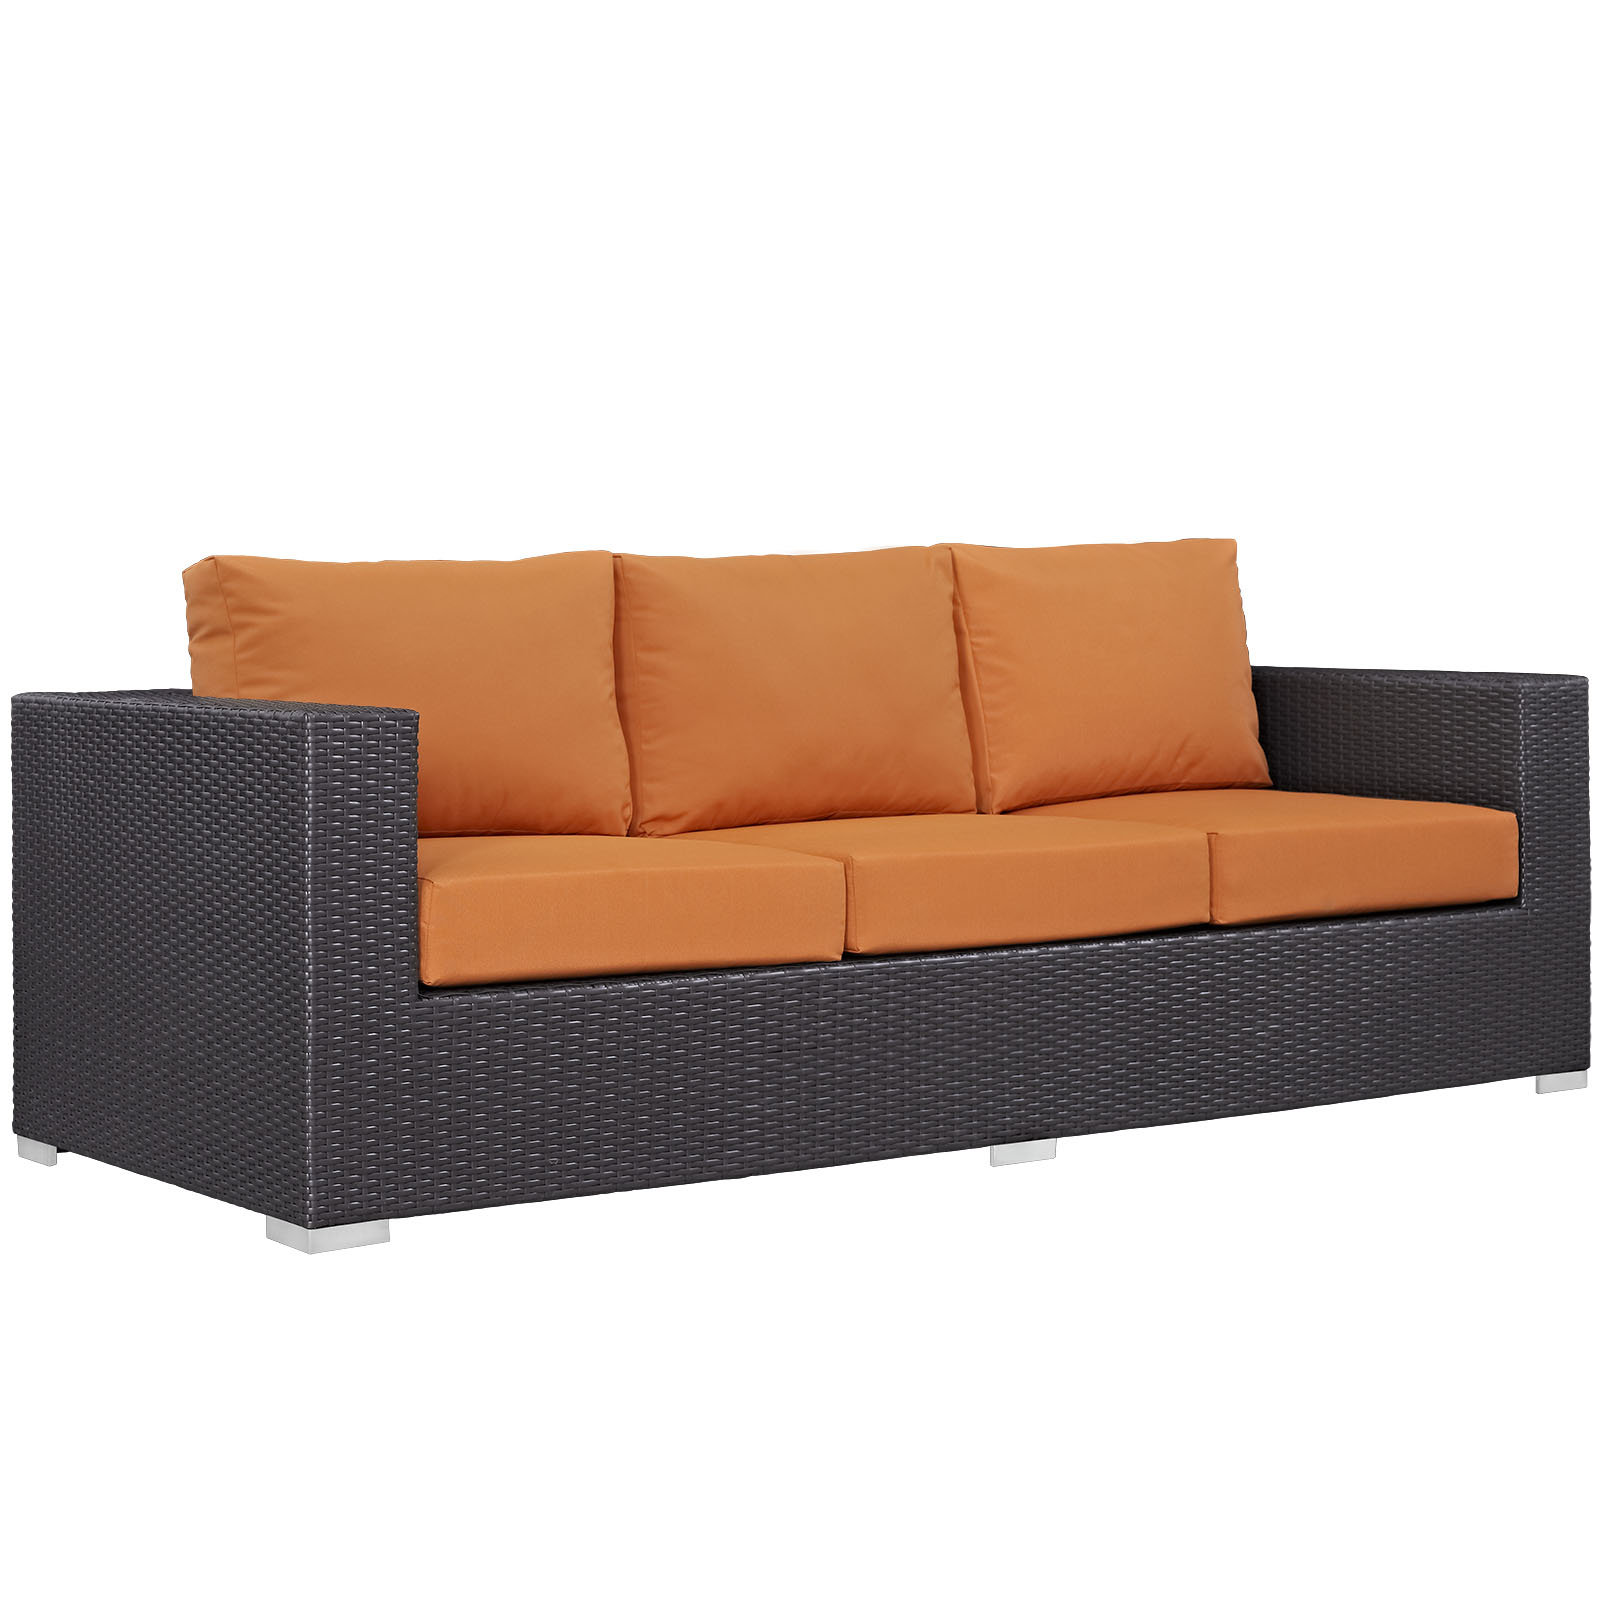 Modway Convene 3 Piece Outdoor Patio Sofa Set in Espresso Orange - image 5 of 7